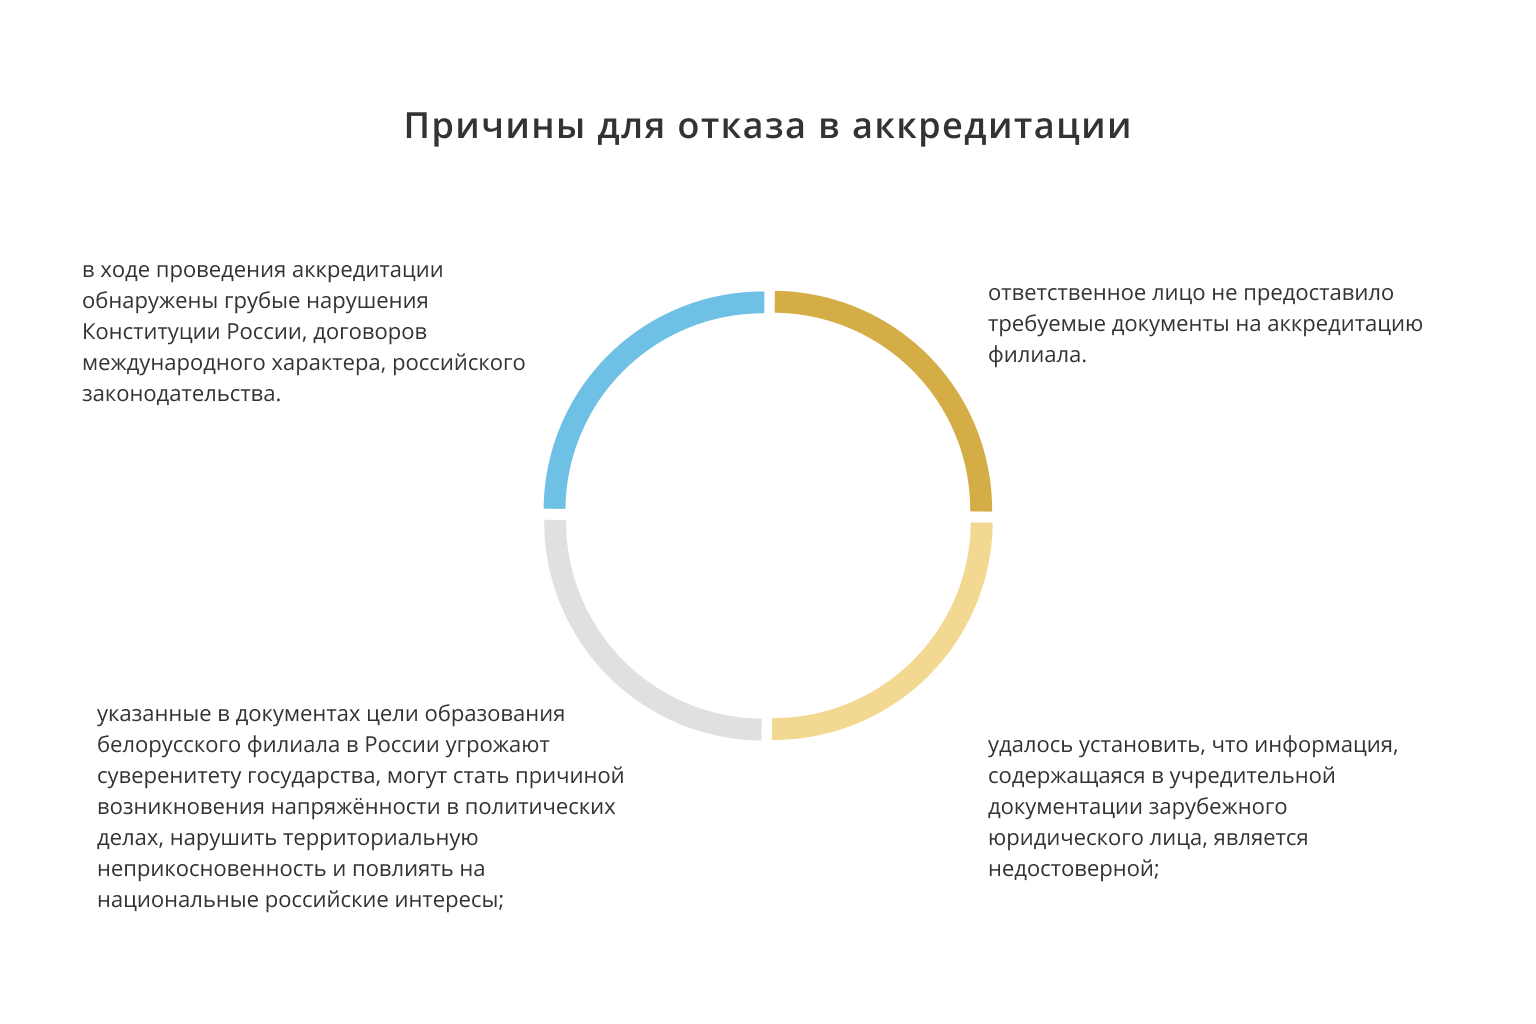 Как в Российской Федерации создать филиал белорусского юрлица в 2021 году?